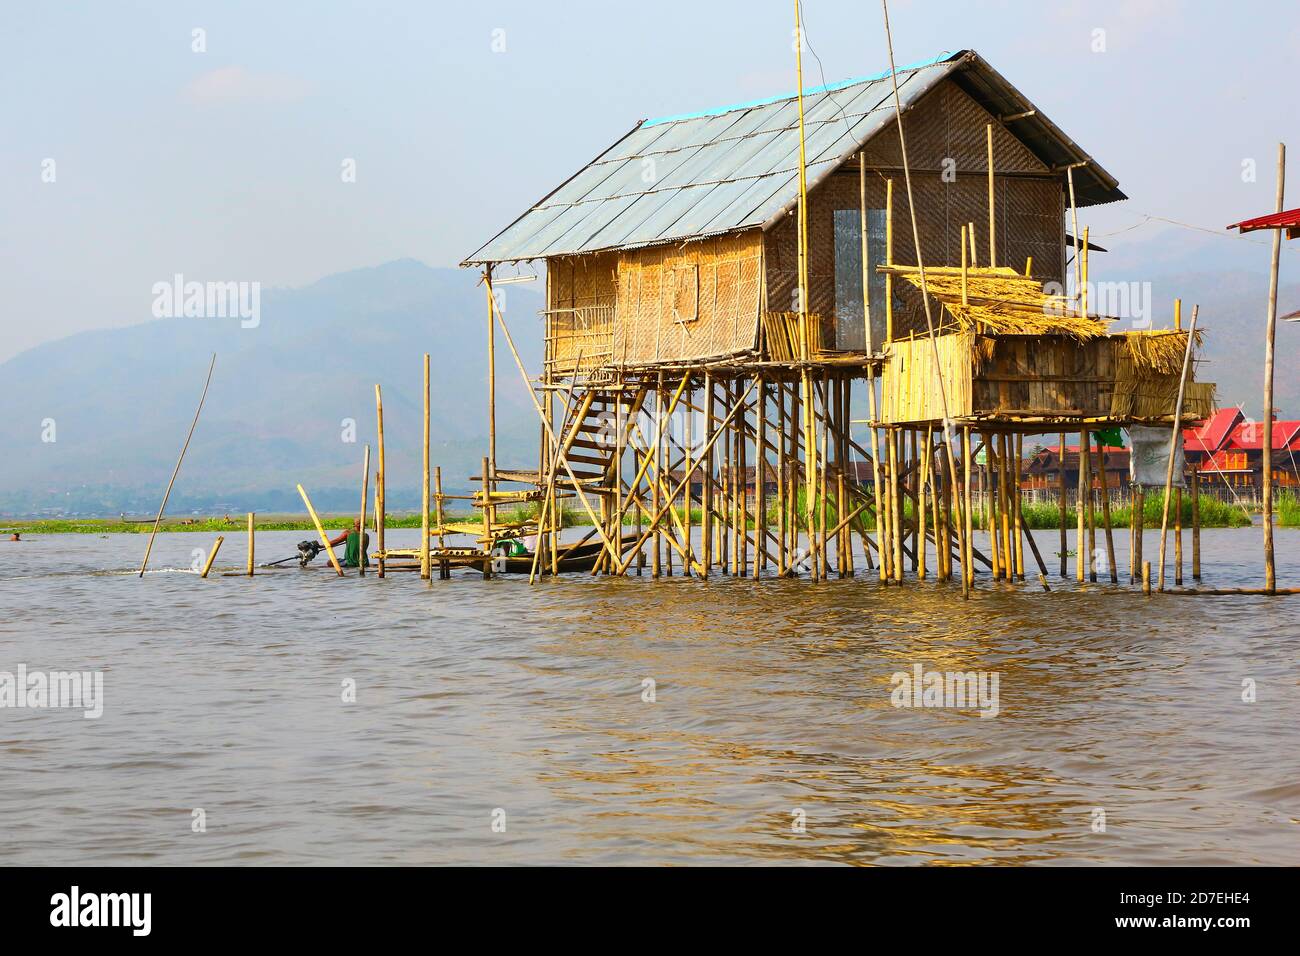 Maison traditionnelle sur pilotis du lac Inle, Myanmar Banque D'Images